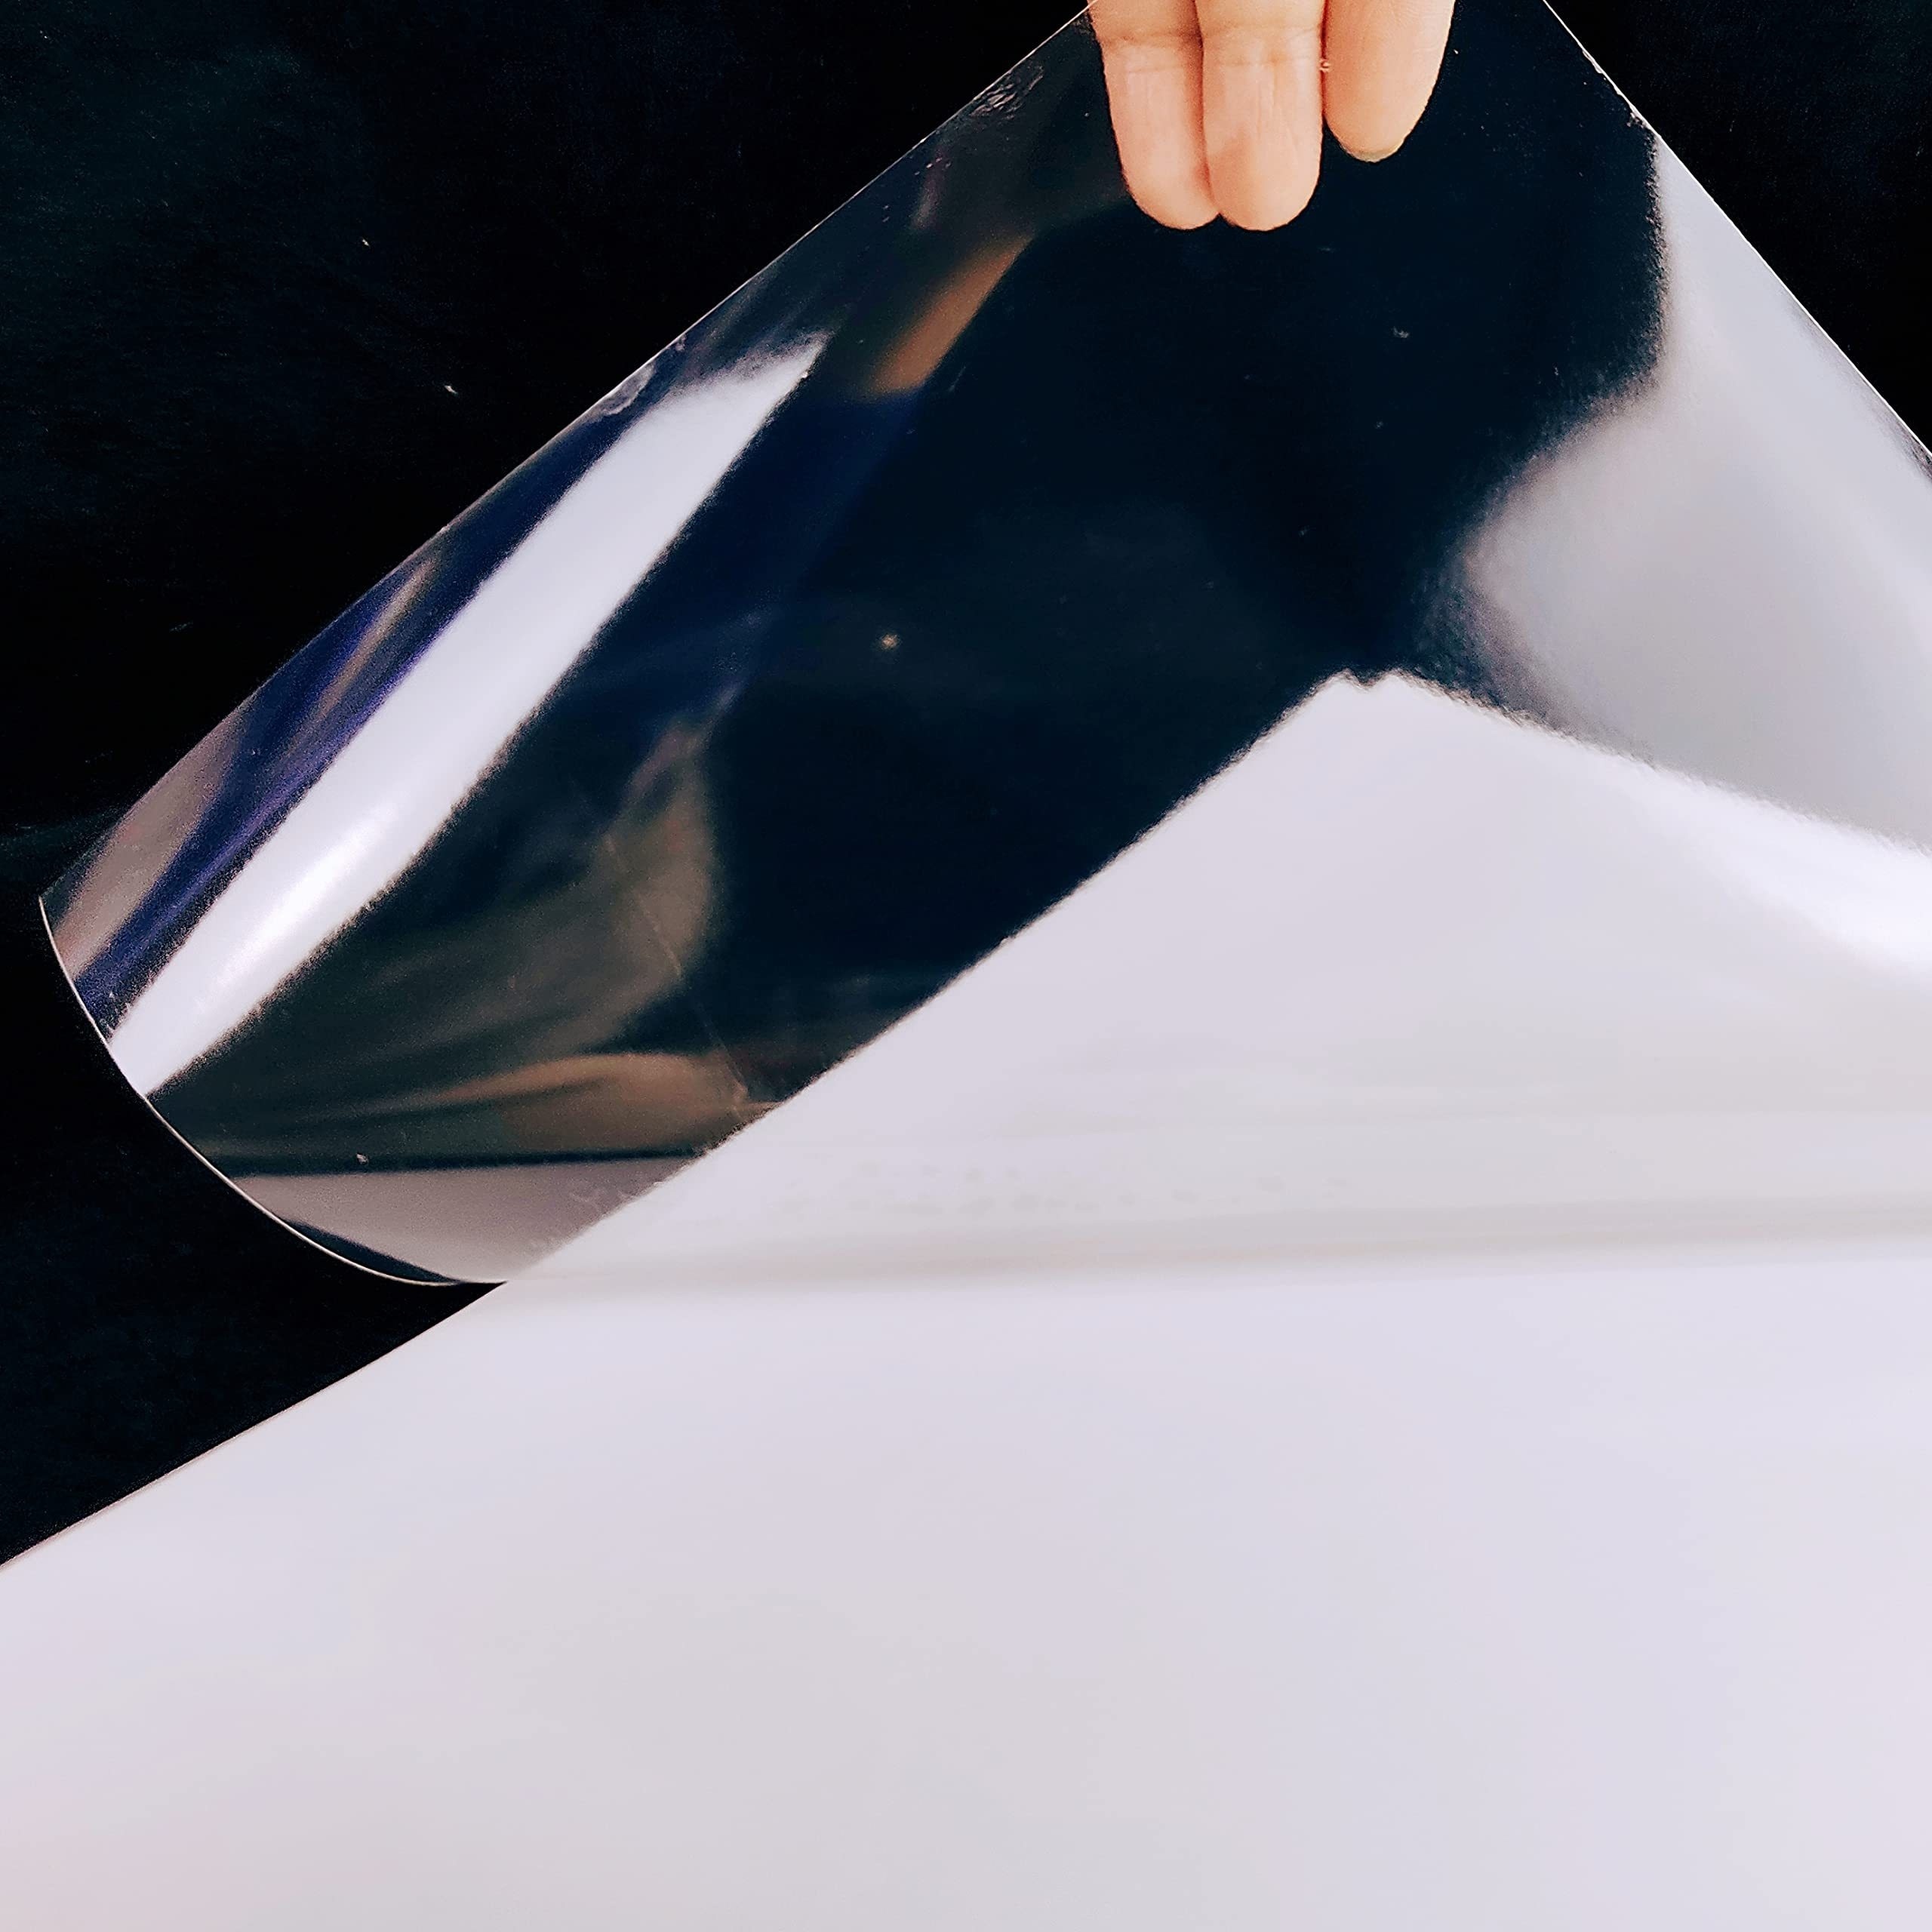 Papier autocollant imprimable en vinyle - 20 feuilles de papier imperméable  mat de qualité supérieure pour imprimante à jet d'encre - Sèche rapidement  et retient parfaitement l'encre 